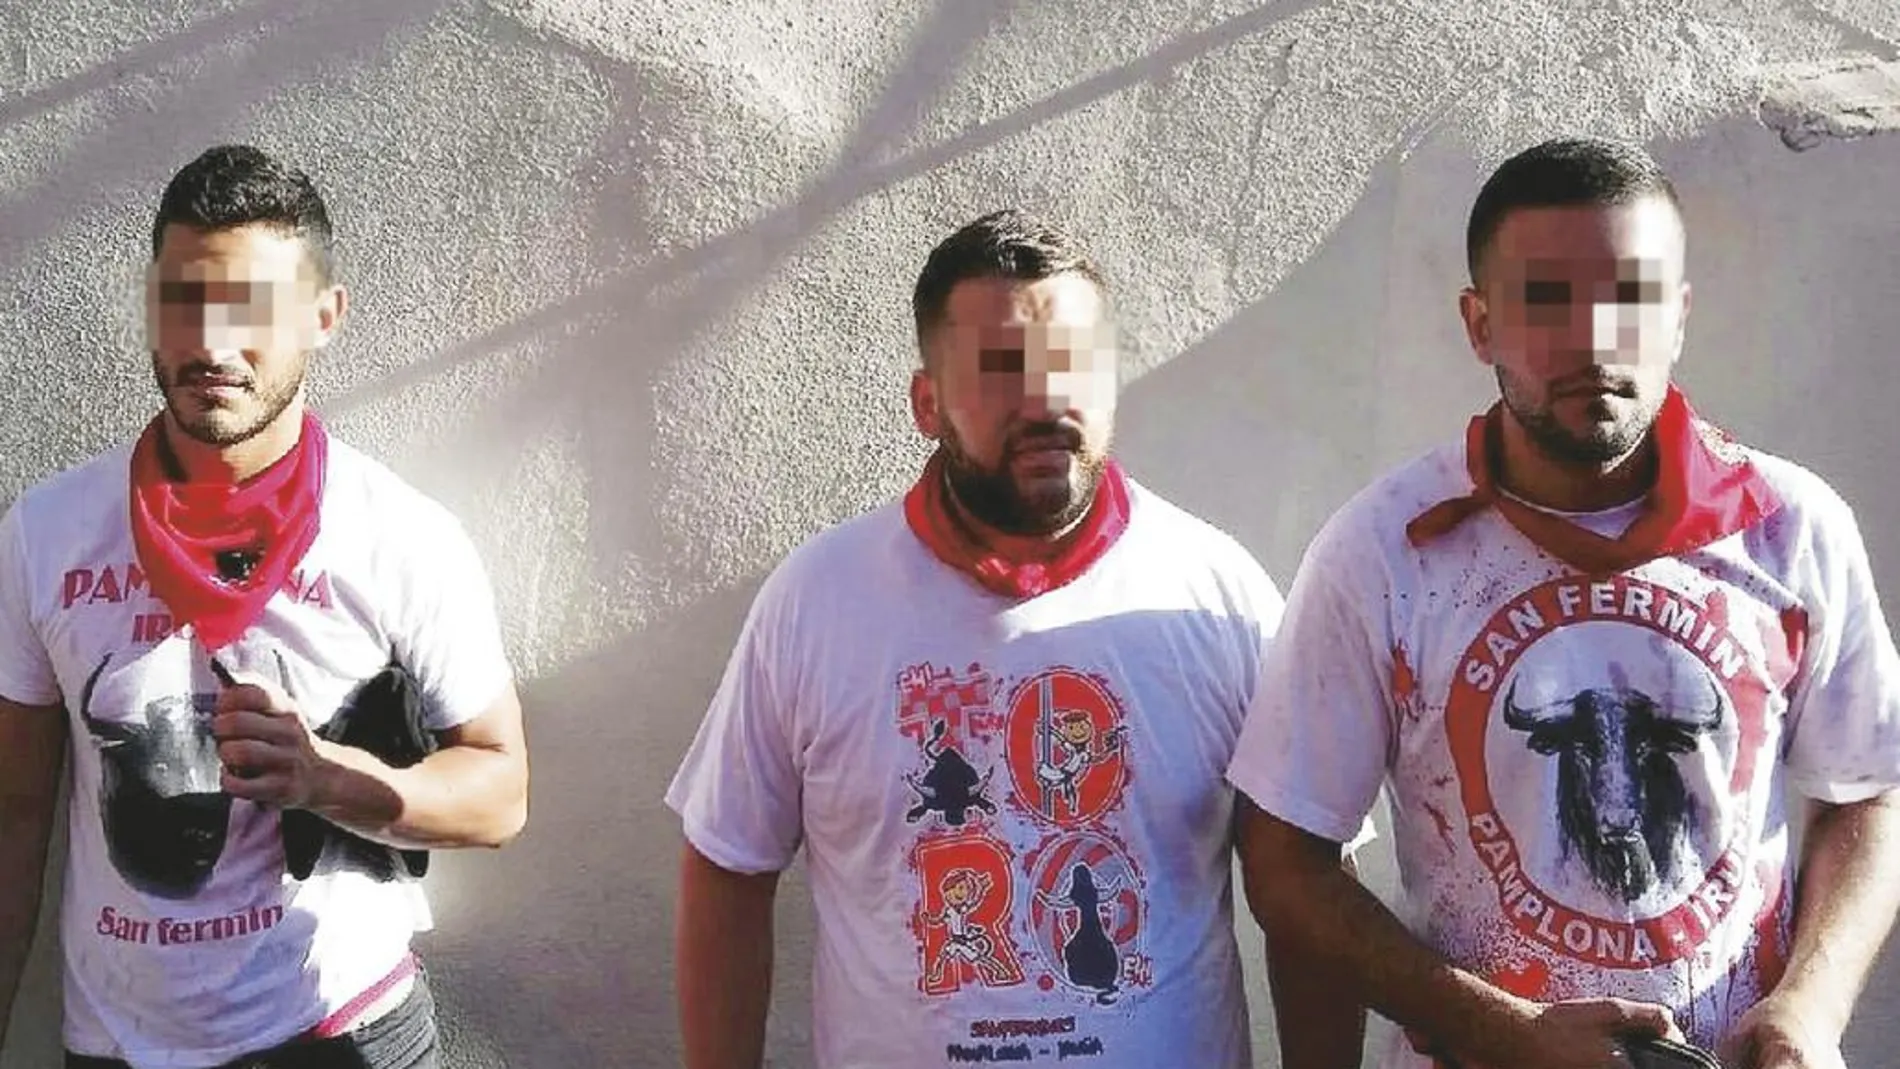 Tres de los cinco miembros de La Manada acusados de violación grupal en los sanfermines del año pasado